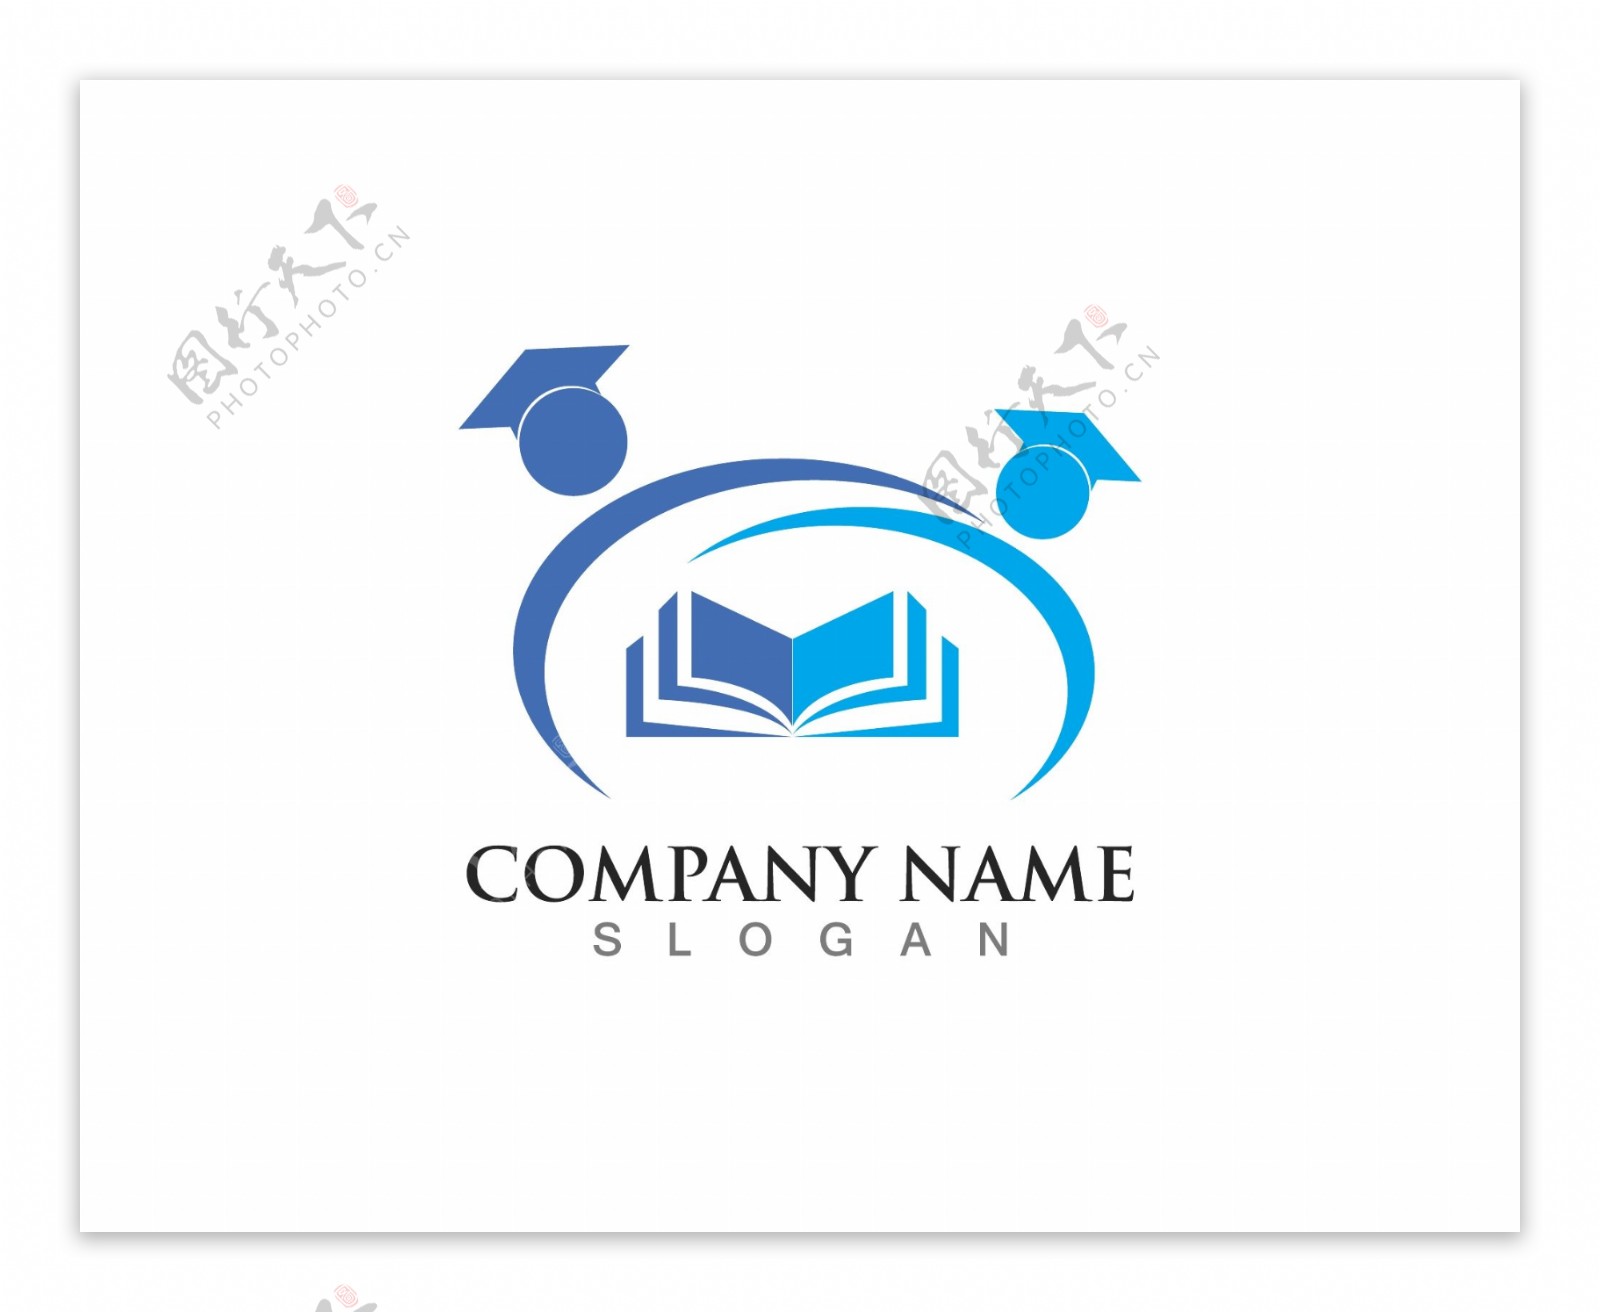 互联网领域教育标志标识大学logo